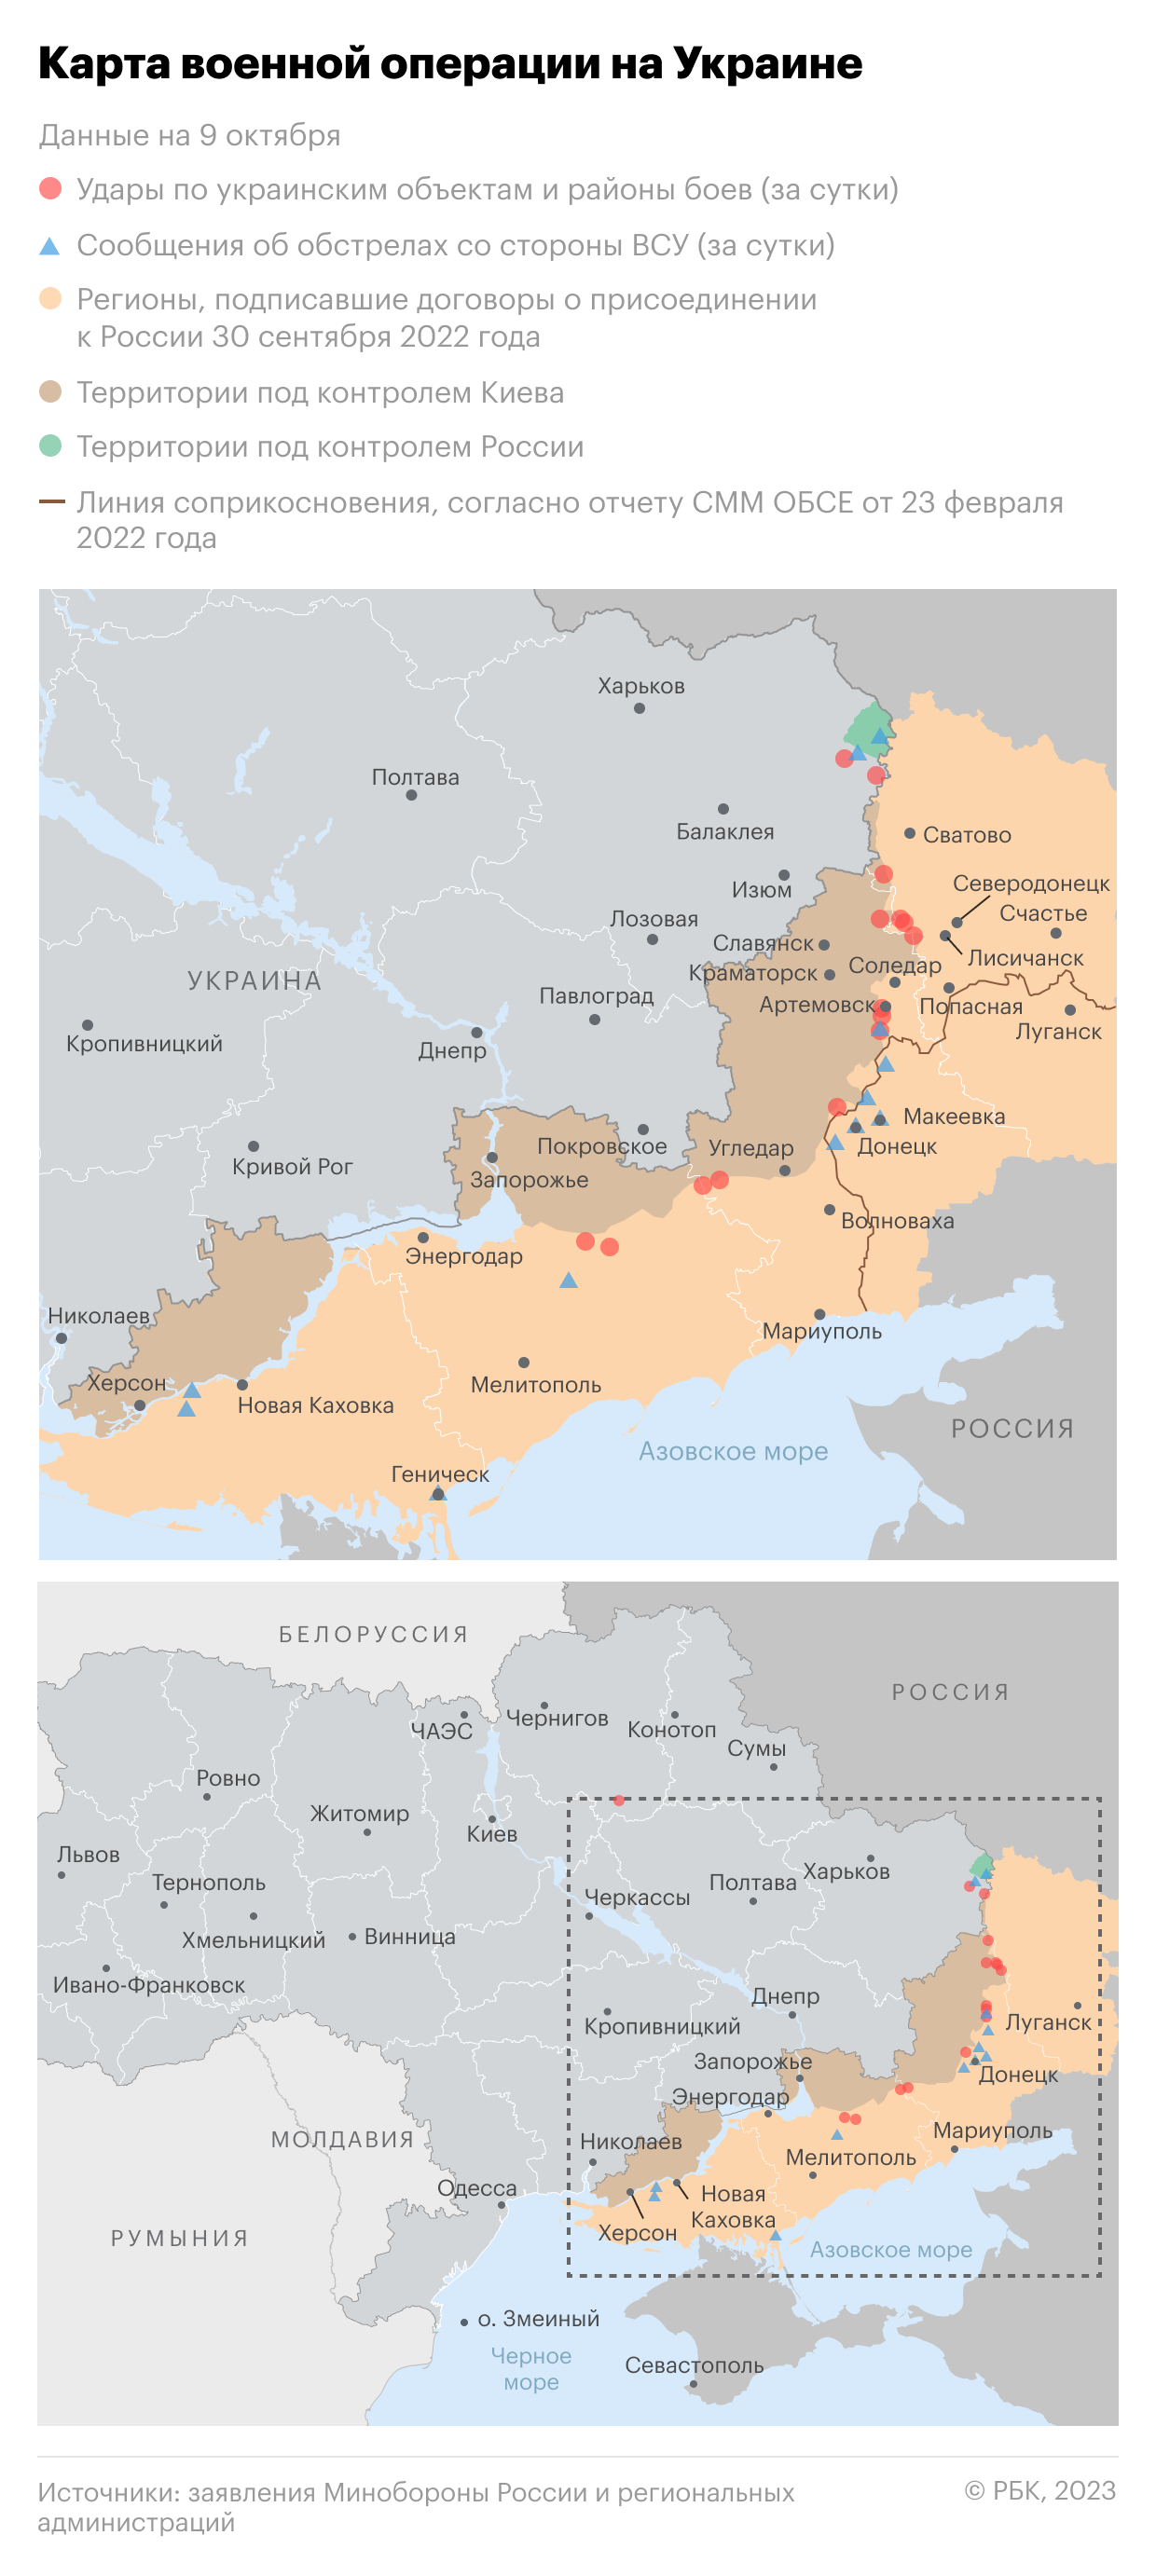 Военная операция на Украине. Карта на 9 октября